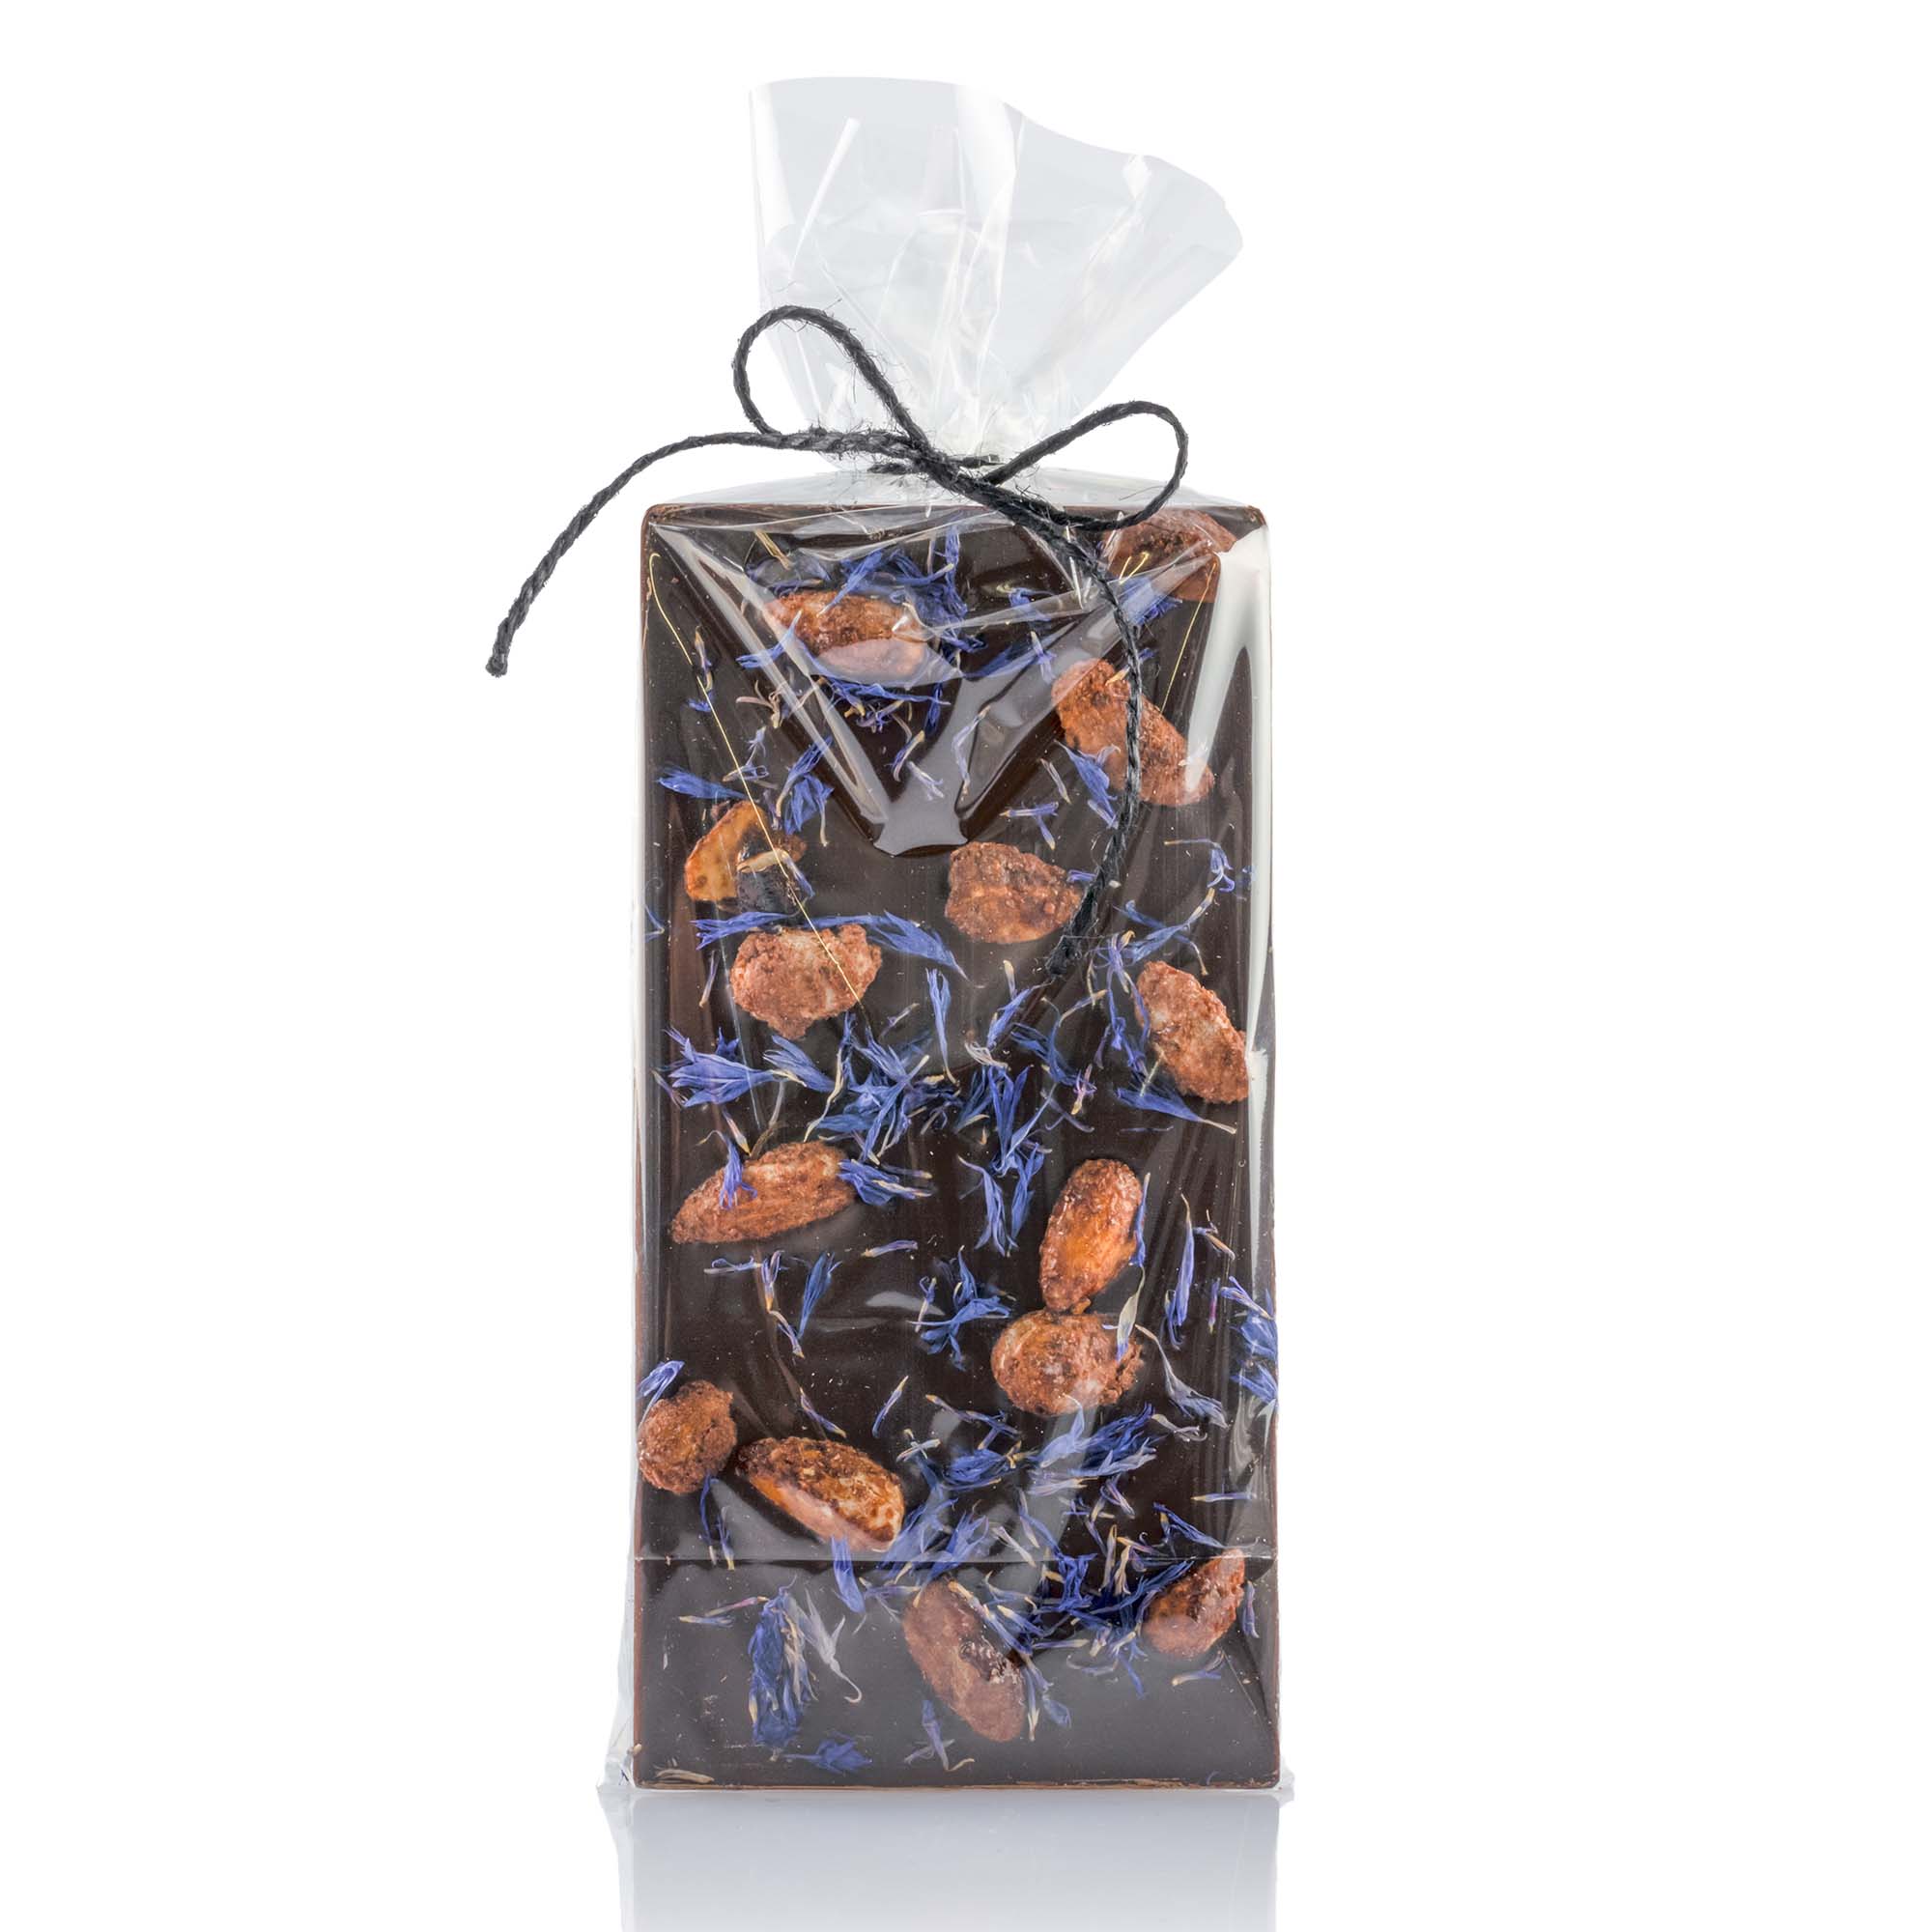 Schokoladentafel handgeschöpft mit blauen Kornblumen und gebrannten Mandeln, 100g